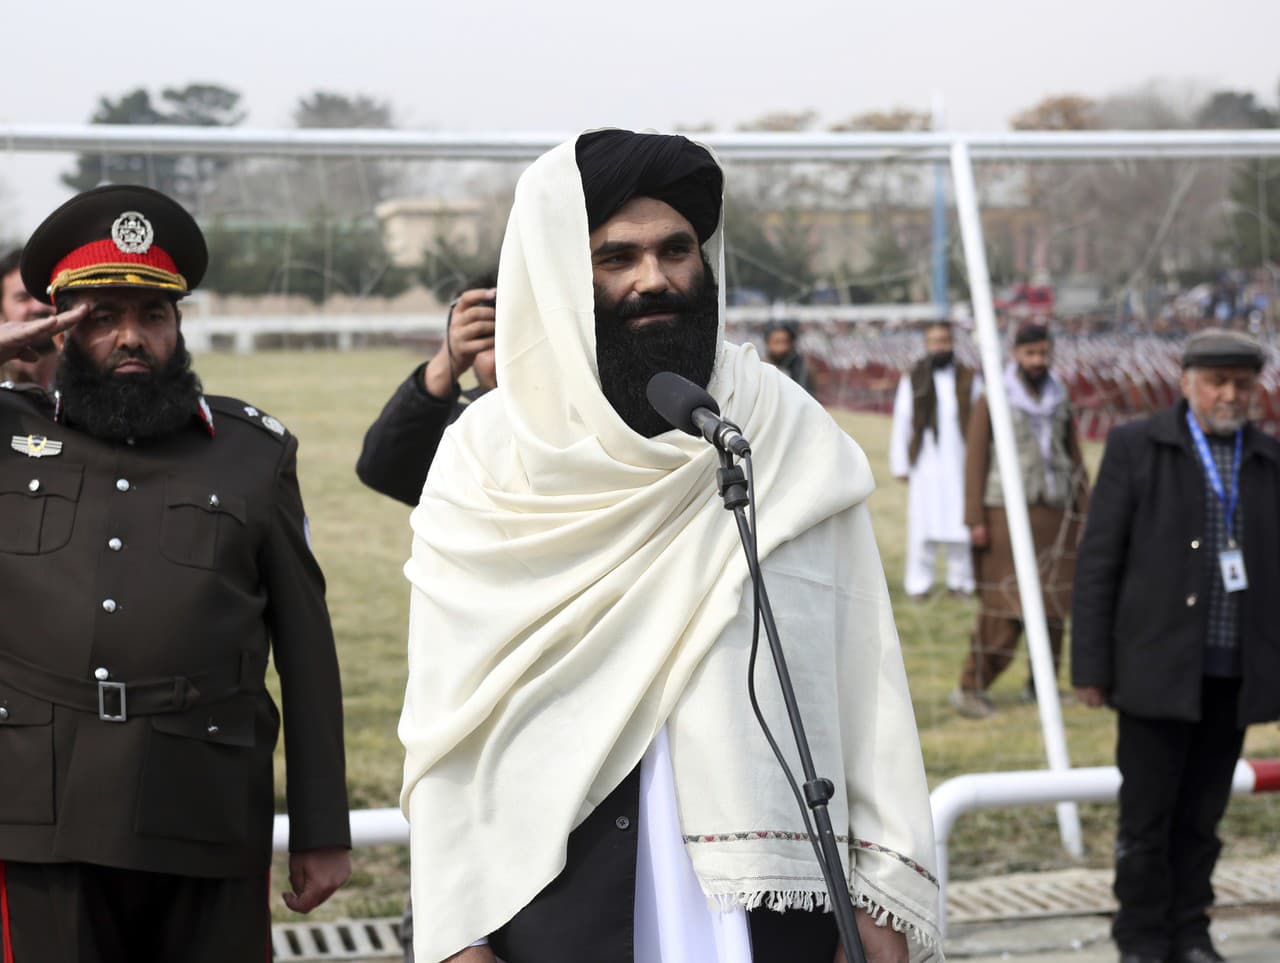 Zástupca vodcu Talibanu a aktuálny talibanský minister vnútra Sirádžuddín Hakkání sa po prvý raz objavil v afganskom hlavnom meste Kábul pred novinármi.